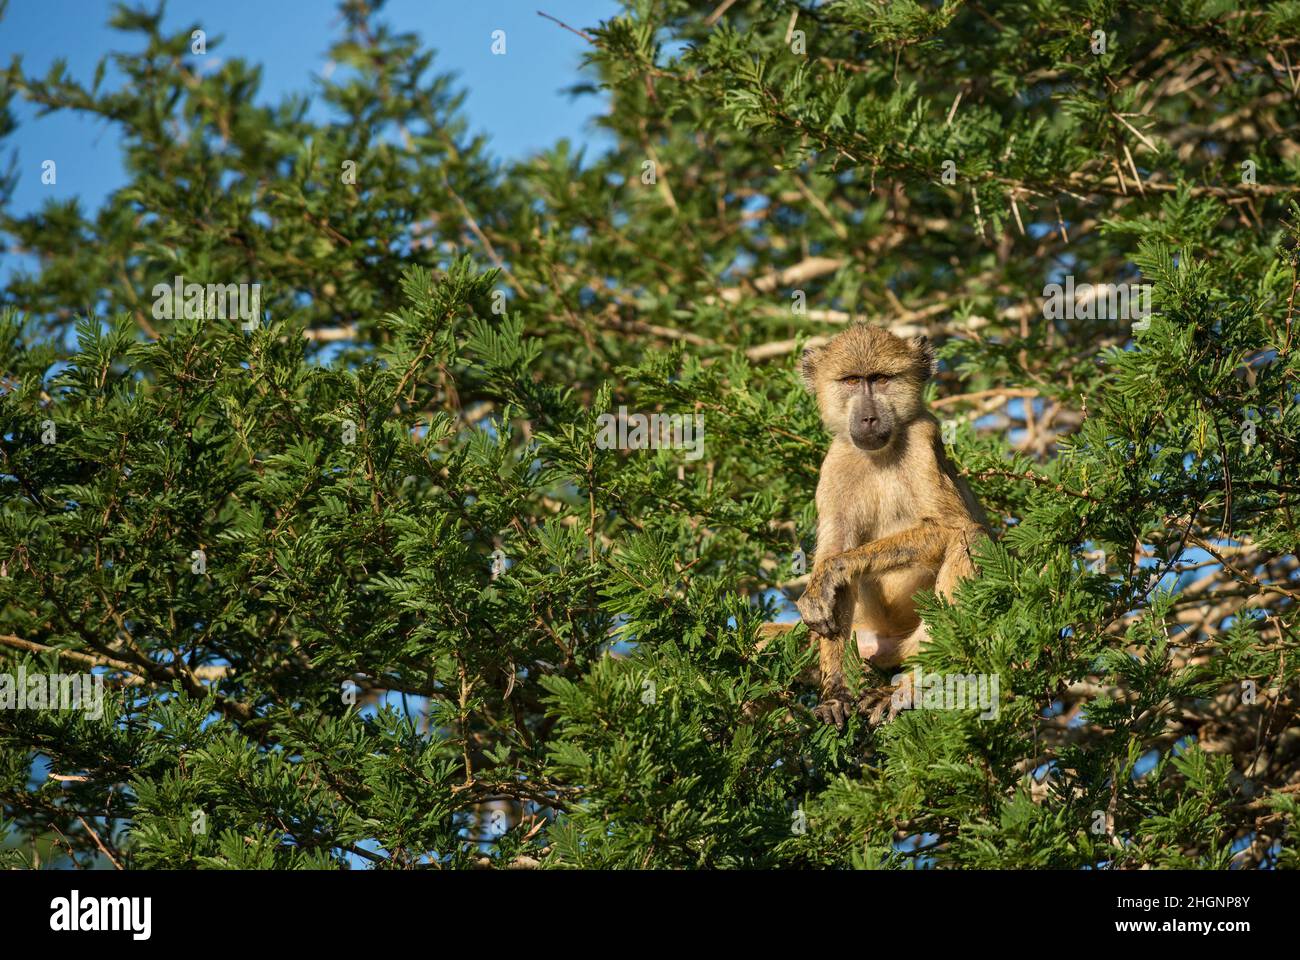 Babouin jaune - Papio cynocephalus, grand primat de terre des savanes et des buissons africains, collines de Taita, Kenya, Afrique. Banque D'Images